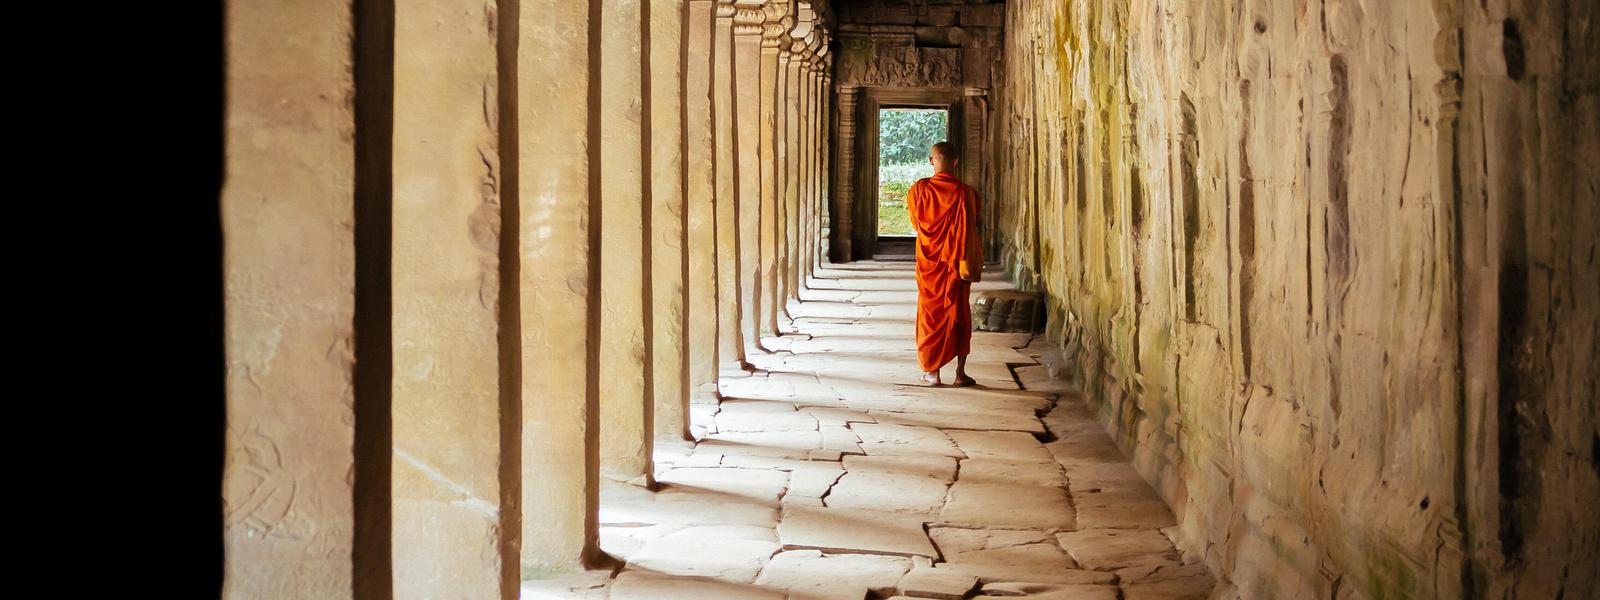 Monk walking